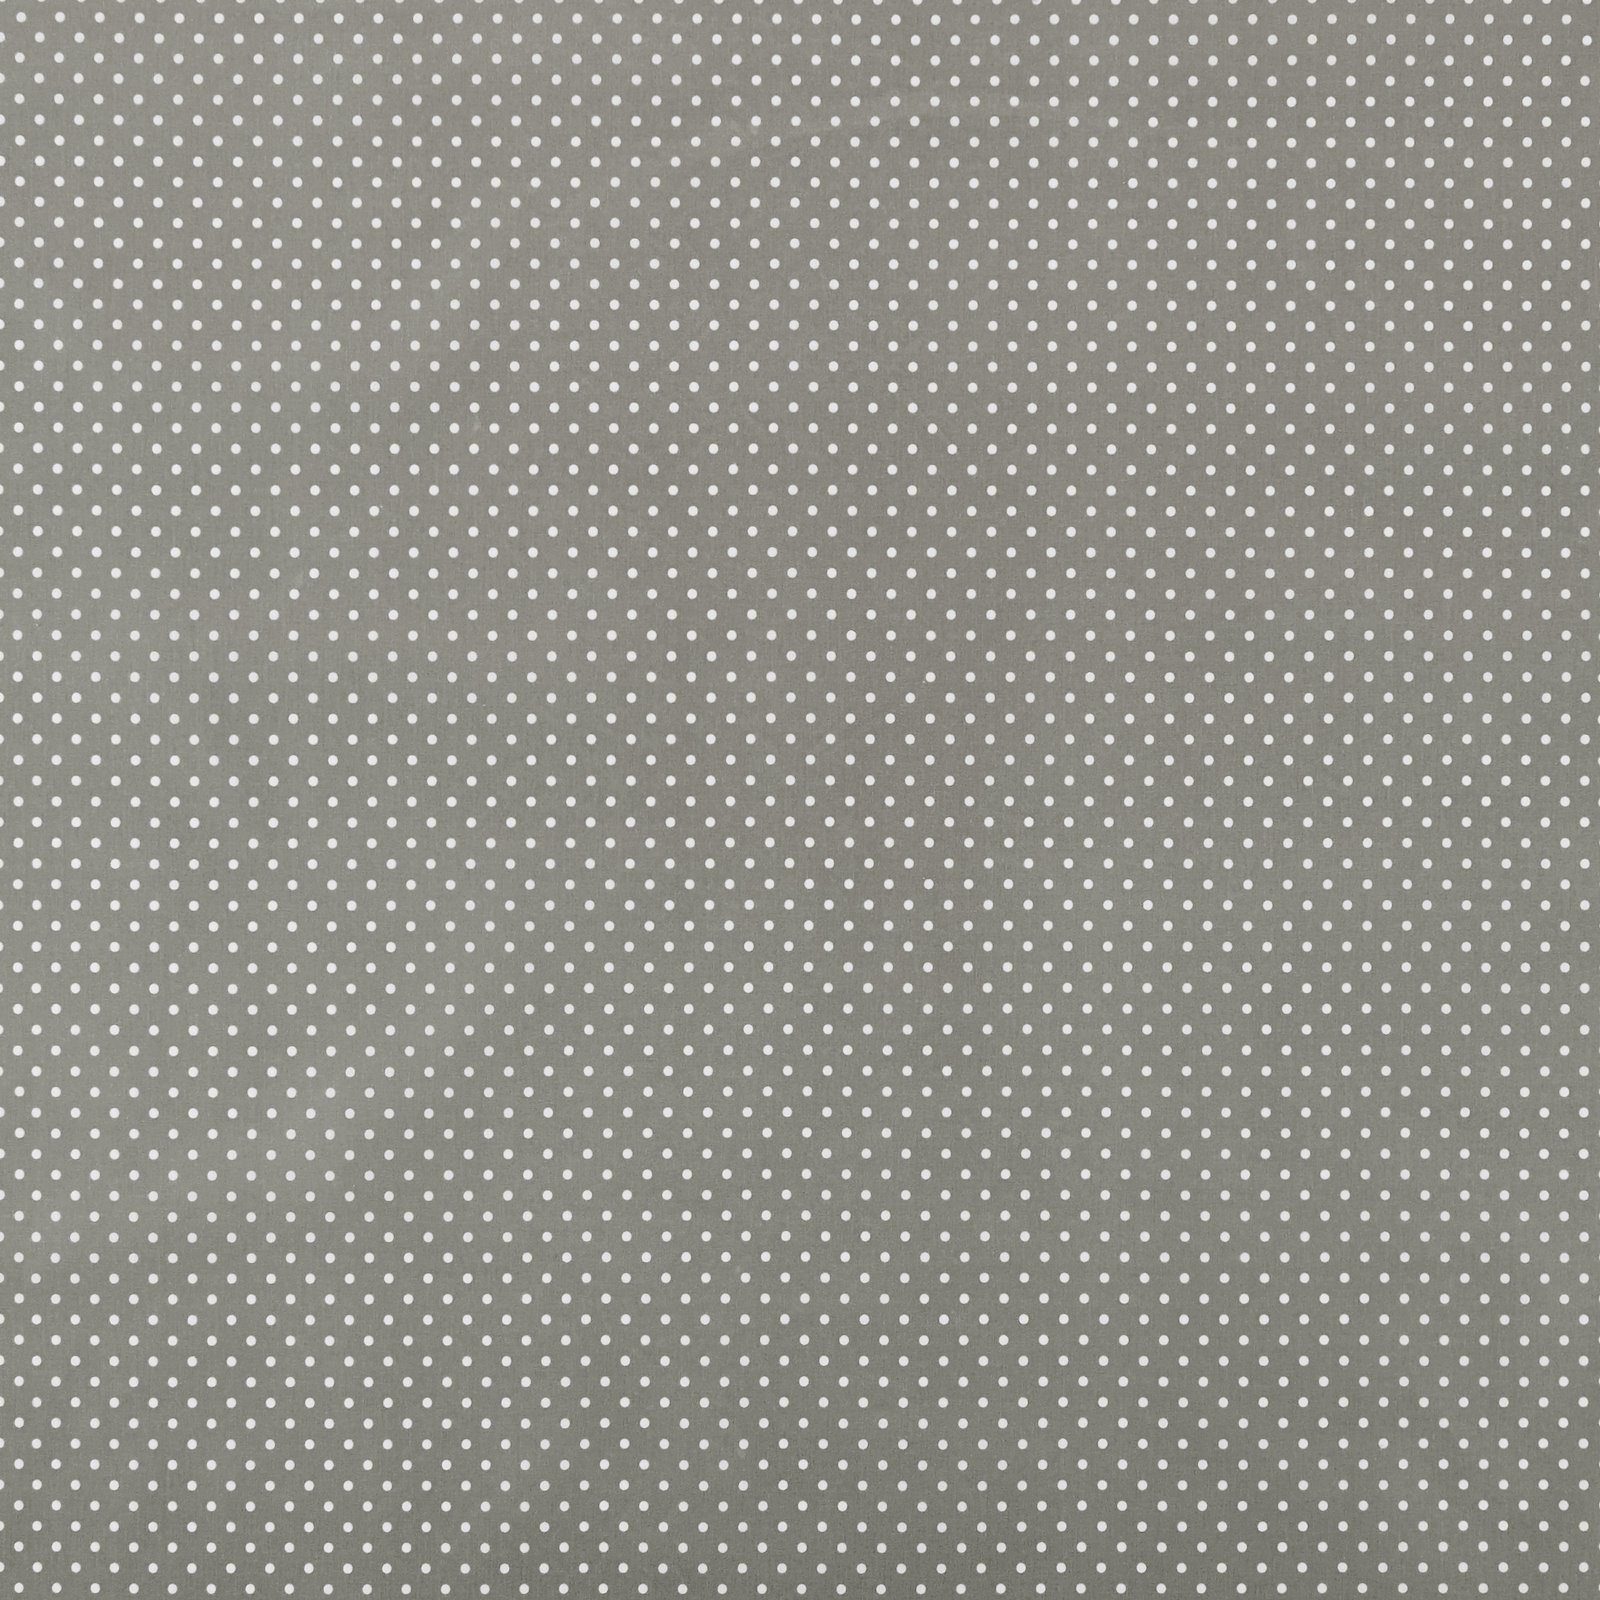 Tekstilvoksduk grå m hvite prikker 860485_pack_sp